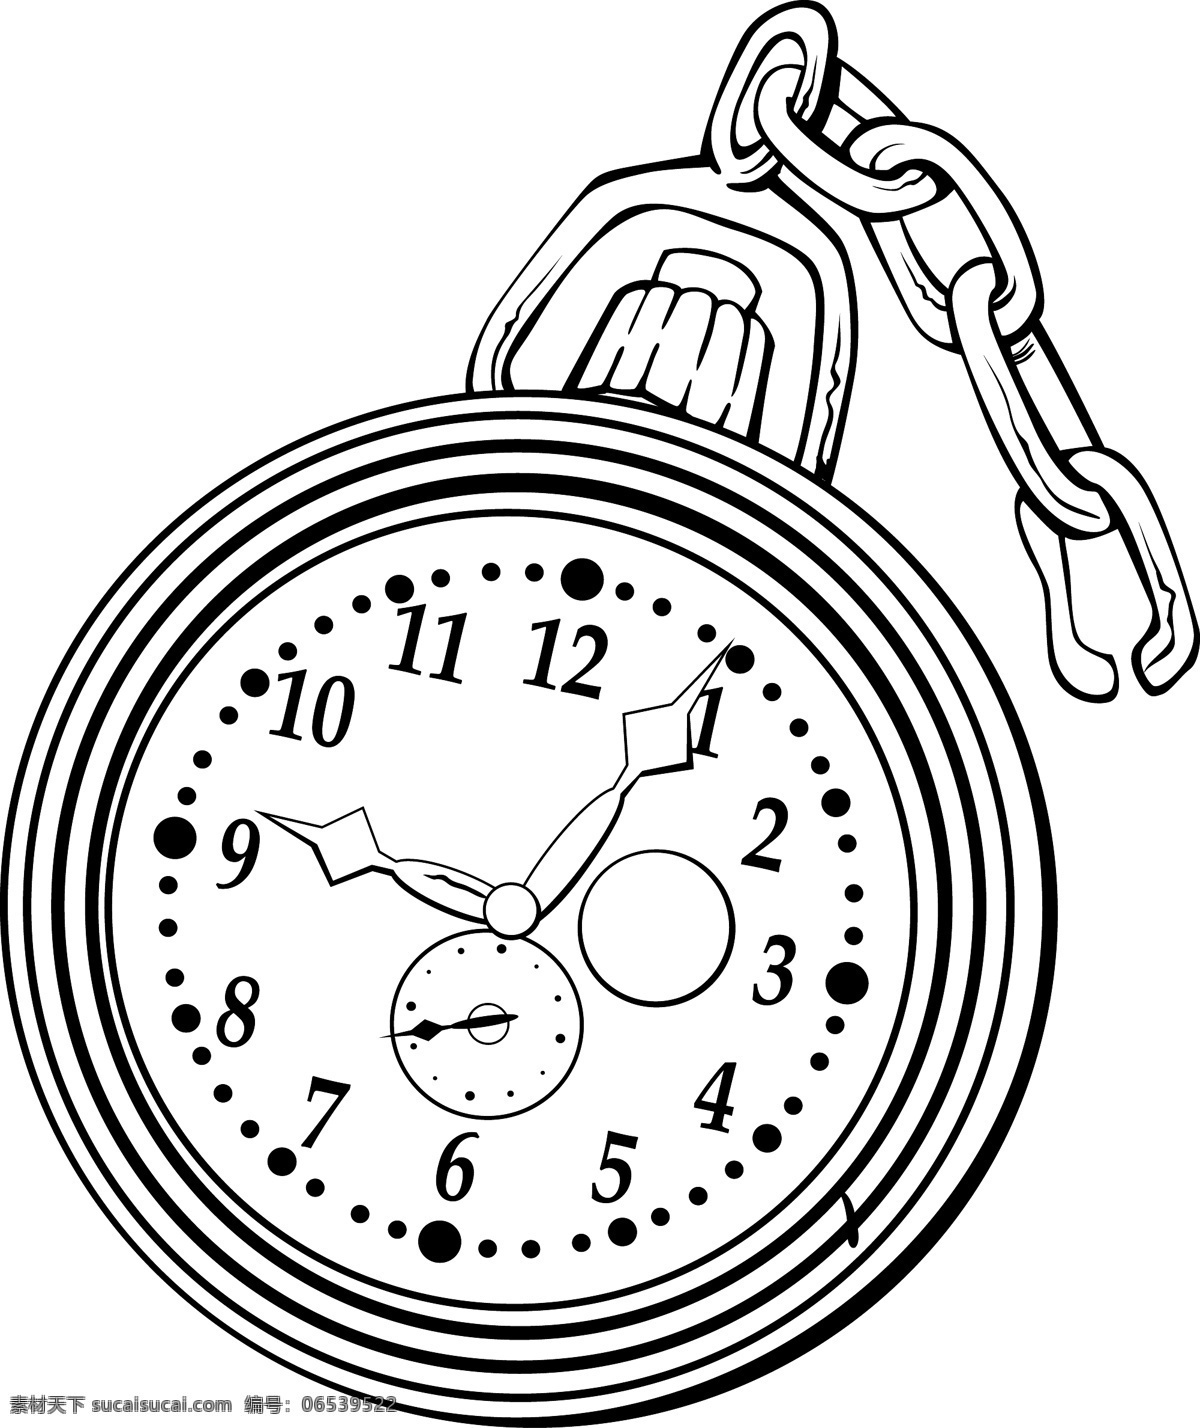 手绘 怀表 矢量 模板下载 插画 矢量怀表 钟表 时间 图标 标签 生活百科 矢量素材 白色